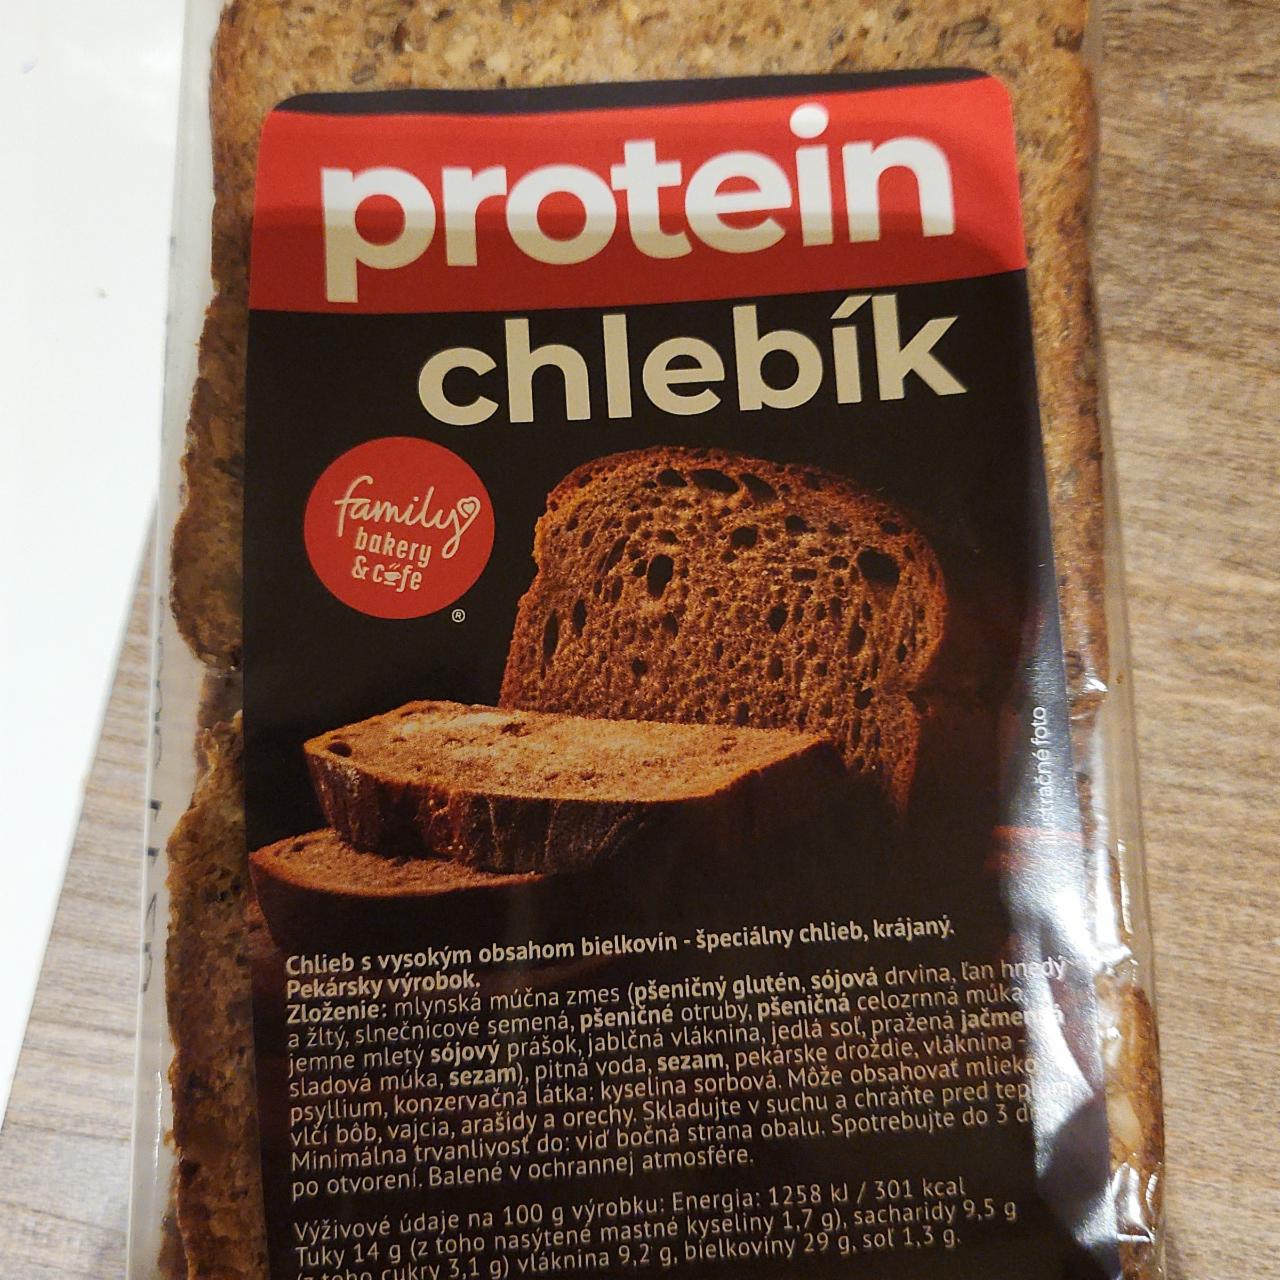 Fotografie - Protein chlebík family bakery & cafe